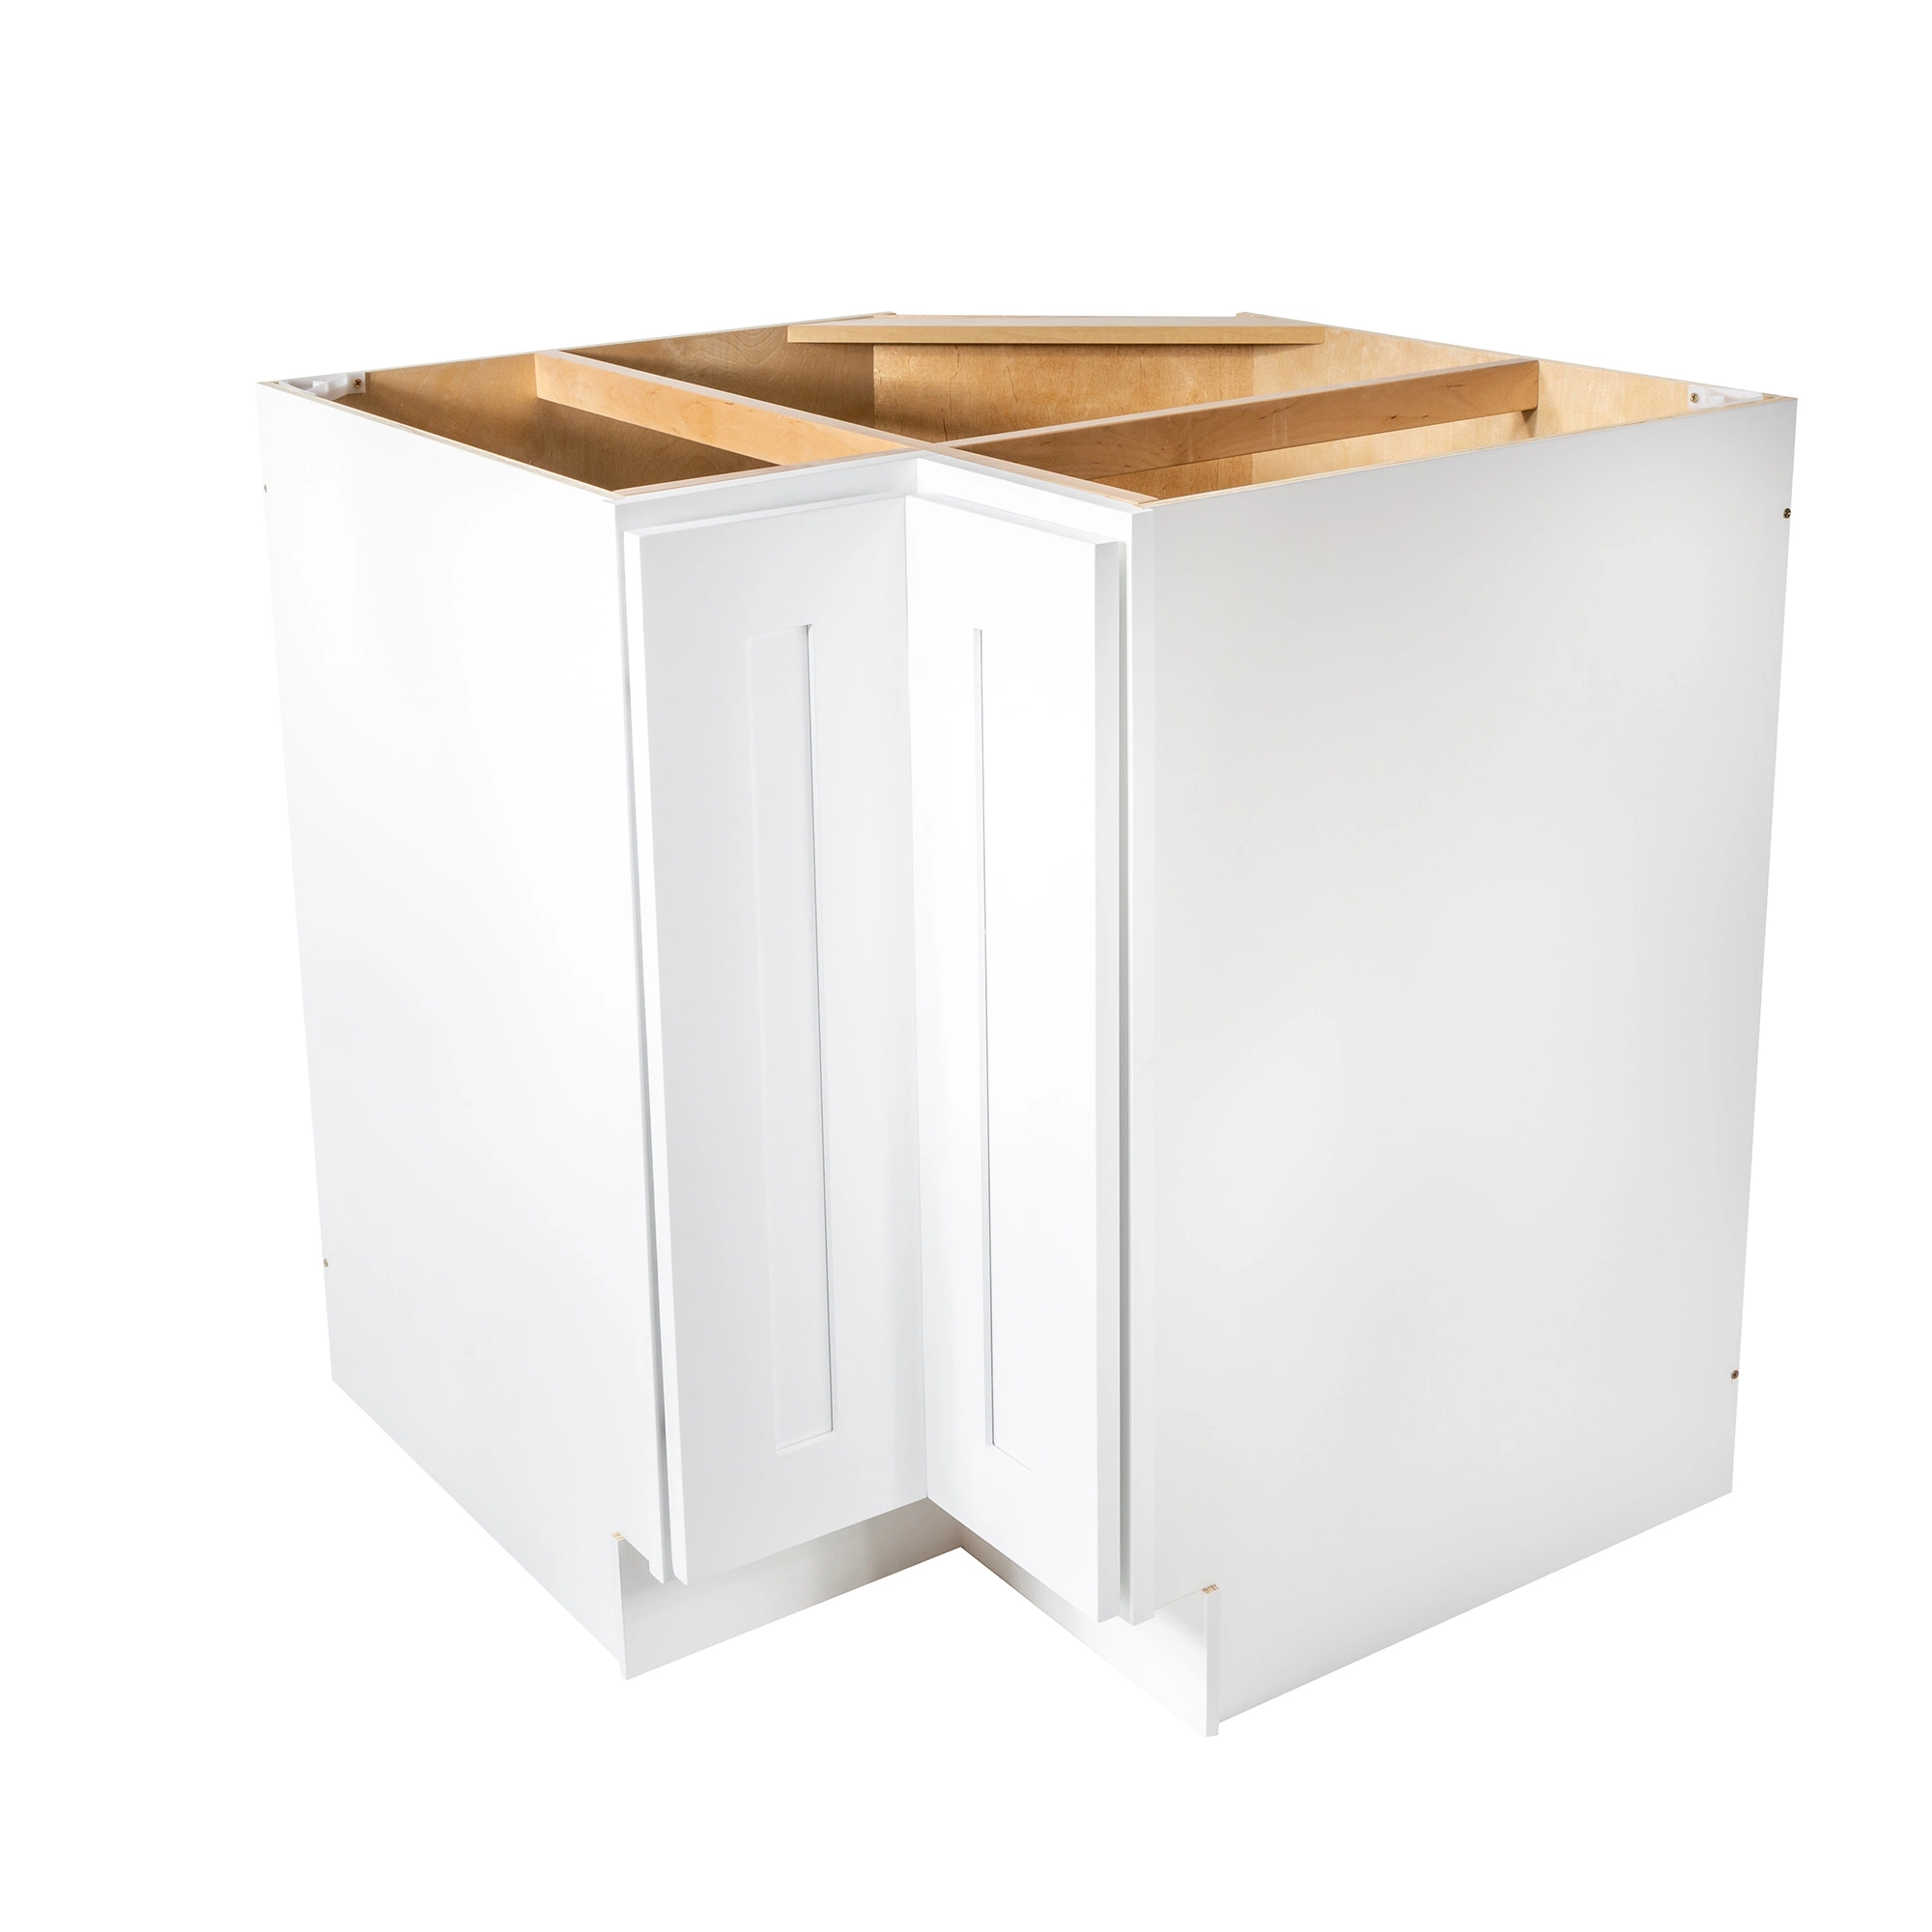 Le contreplaqué fixe Cabinext Kd (Flat-Packed) cabinet modulaire des armoires de cuisine pour les constructeurs